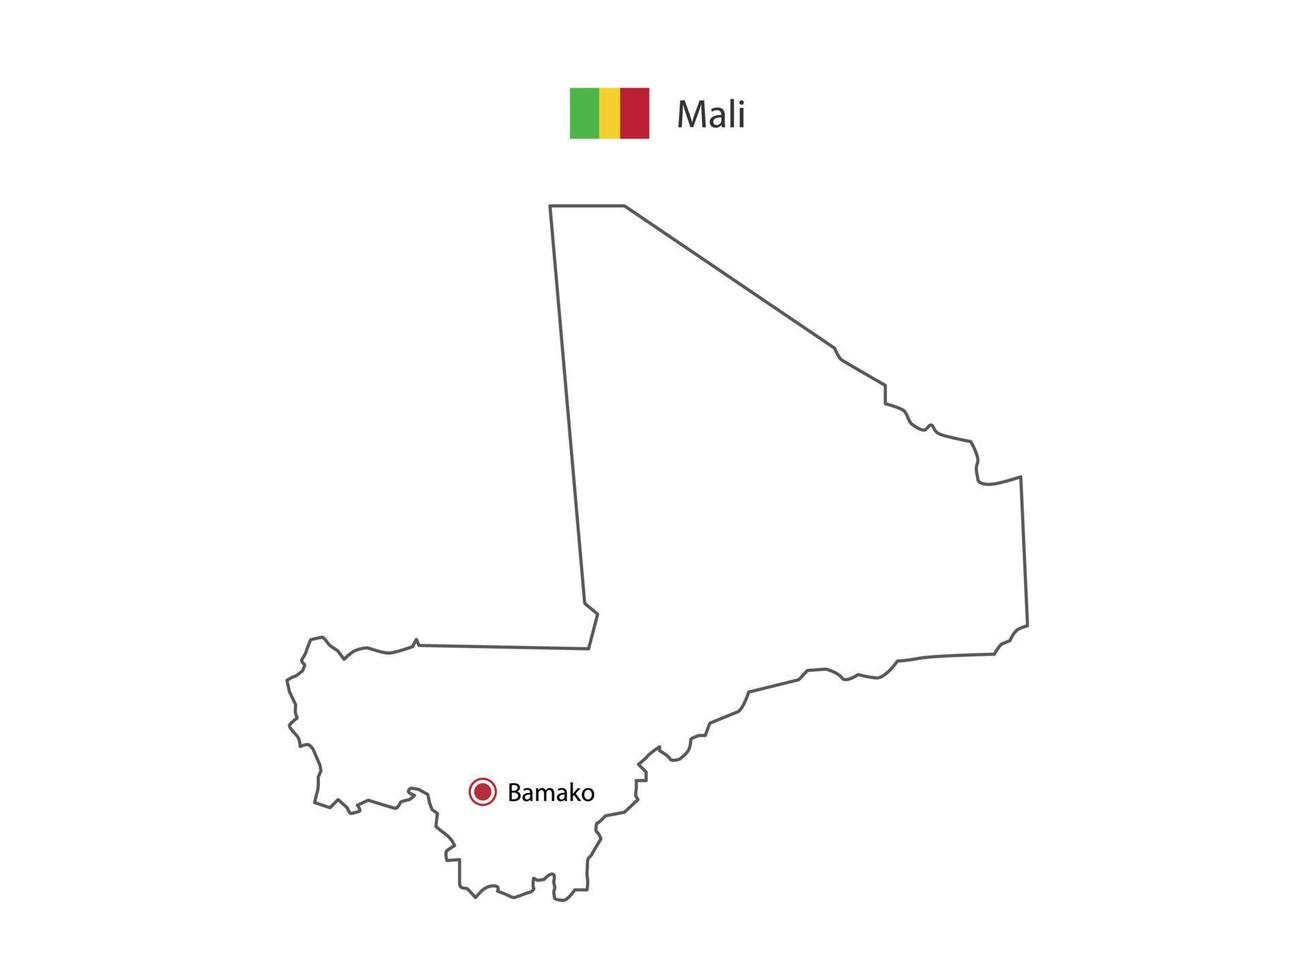 mão desenhar vetor de linha preta fina do mapa de mali com capital bamako em fundo branco.